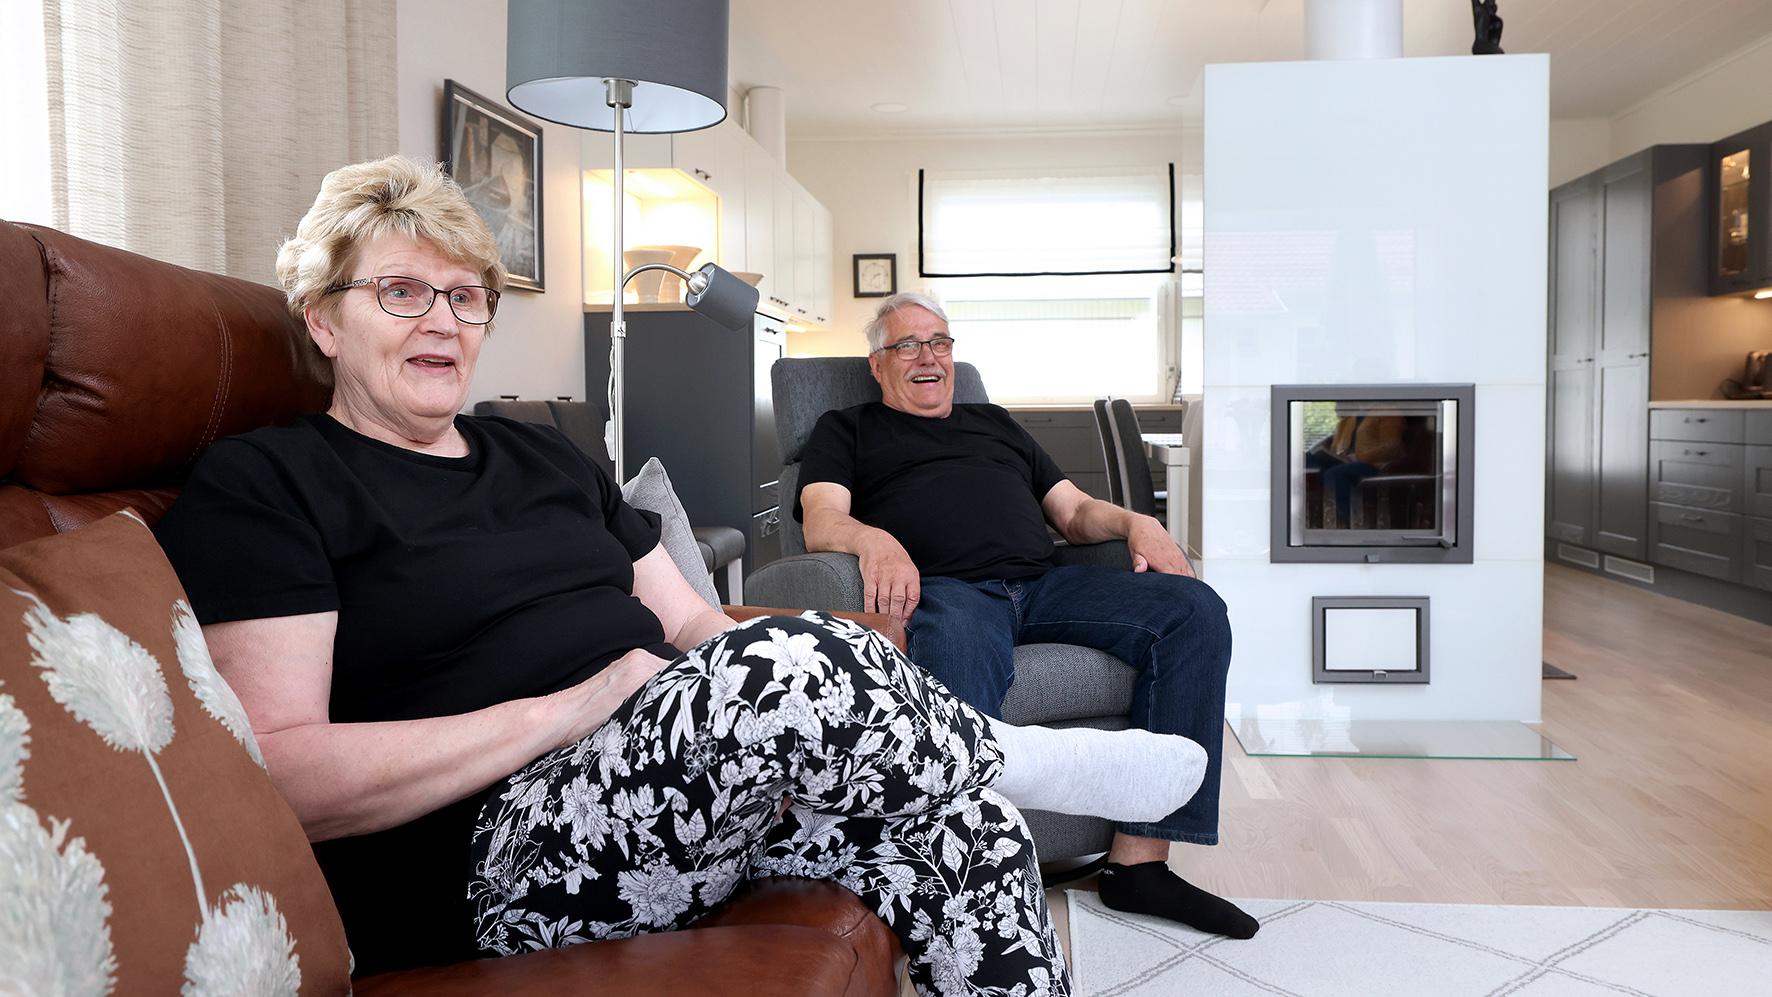 Marita ja Jorma Nylund opettelevat uutta elämää upouudessa kodissa. Aika on ollut rankkaa. "Ilman ystävällistä ja hommansa osaavaa vakuutusyhtiötä olisimme olleet vieläkin enemmän hätää kärsimässä." (Kuva: Jussi Partanen)